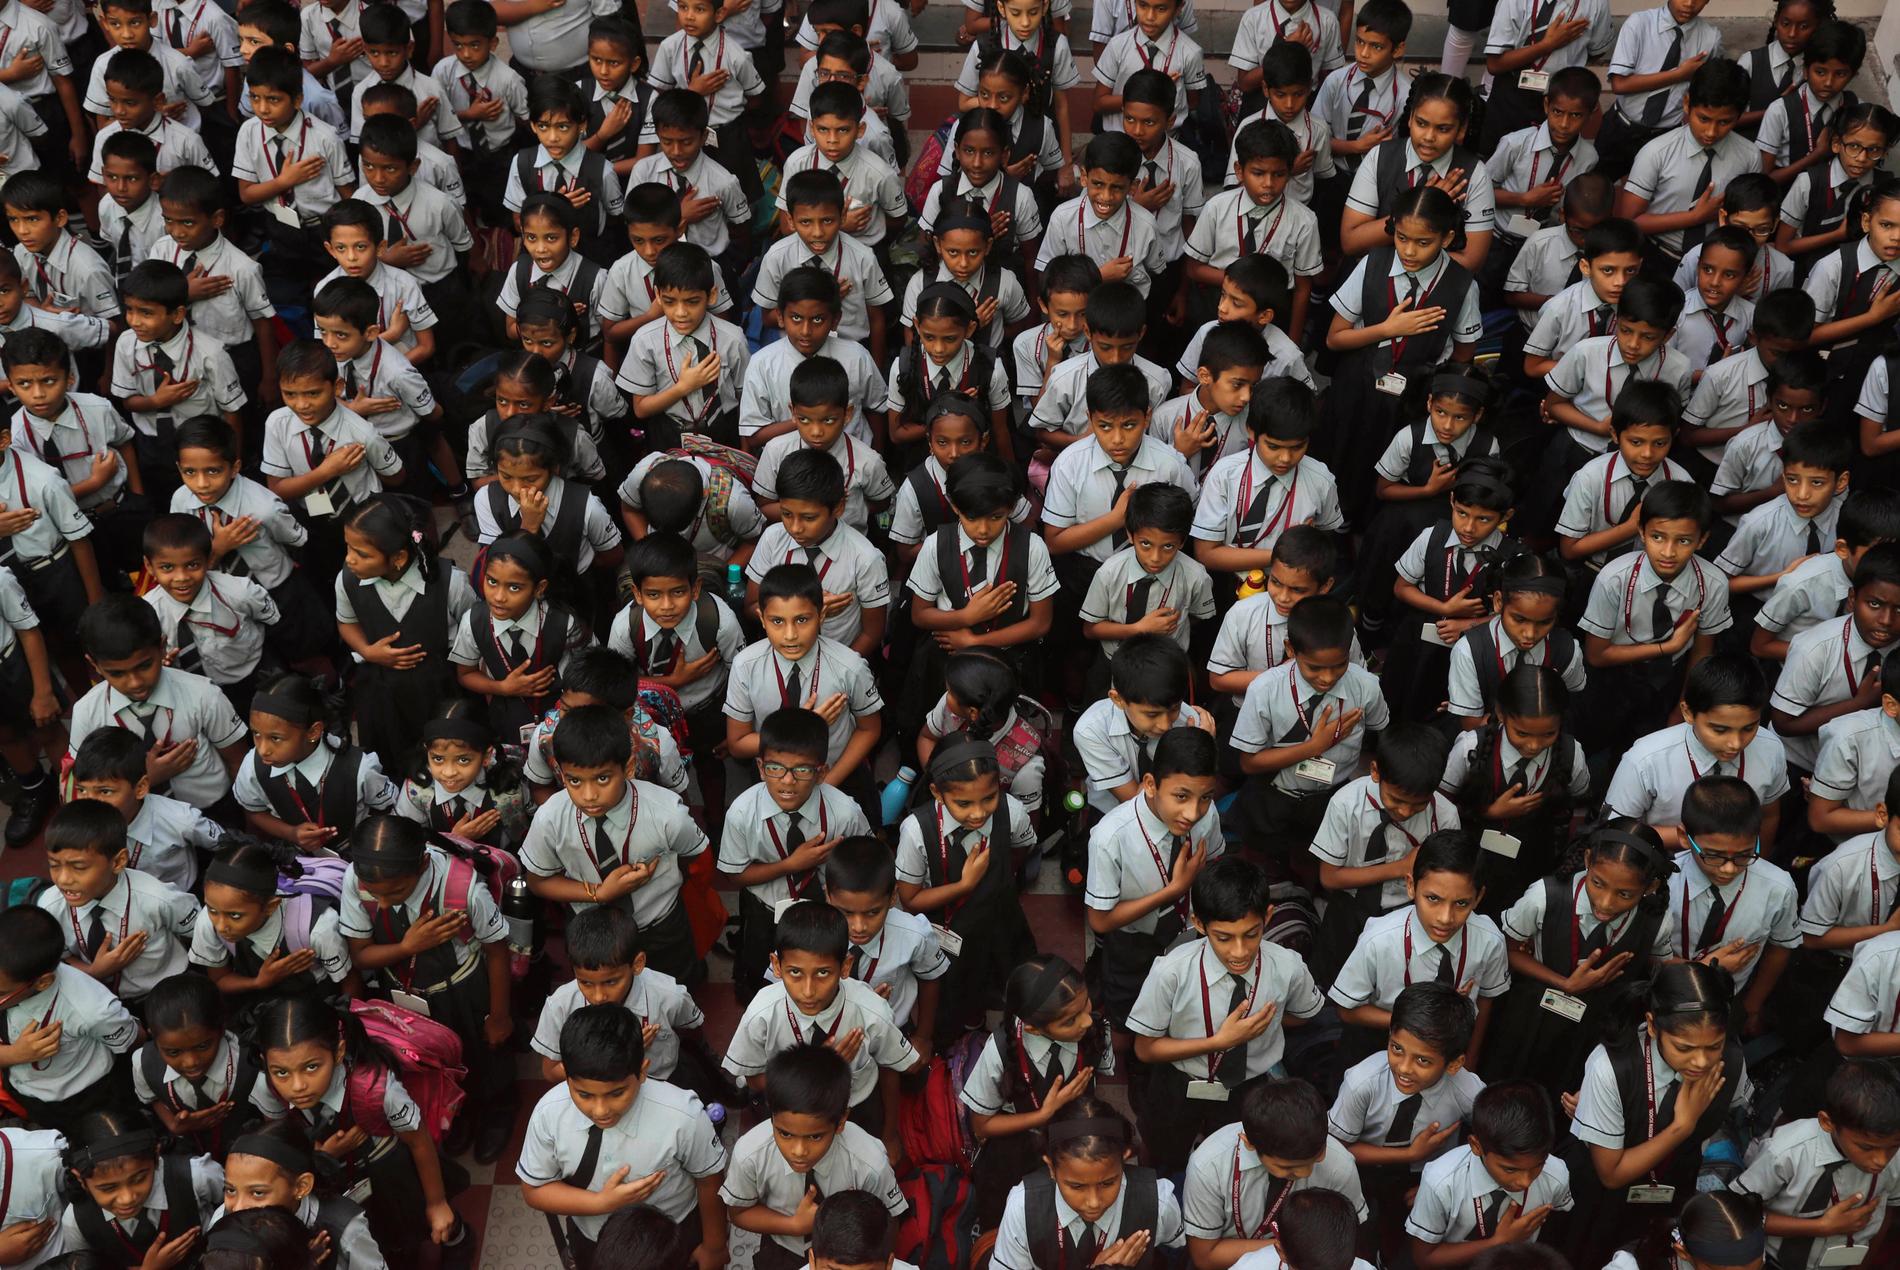 Priset delades ut i samband med storhelgen republikdagen i Indien. Bild från högtidlighållandet i en skola i Bombay – barnen på bilden har inte direkt med artikeln att göra.